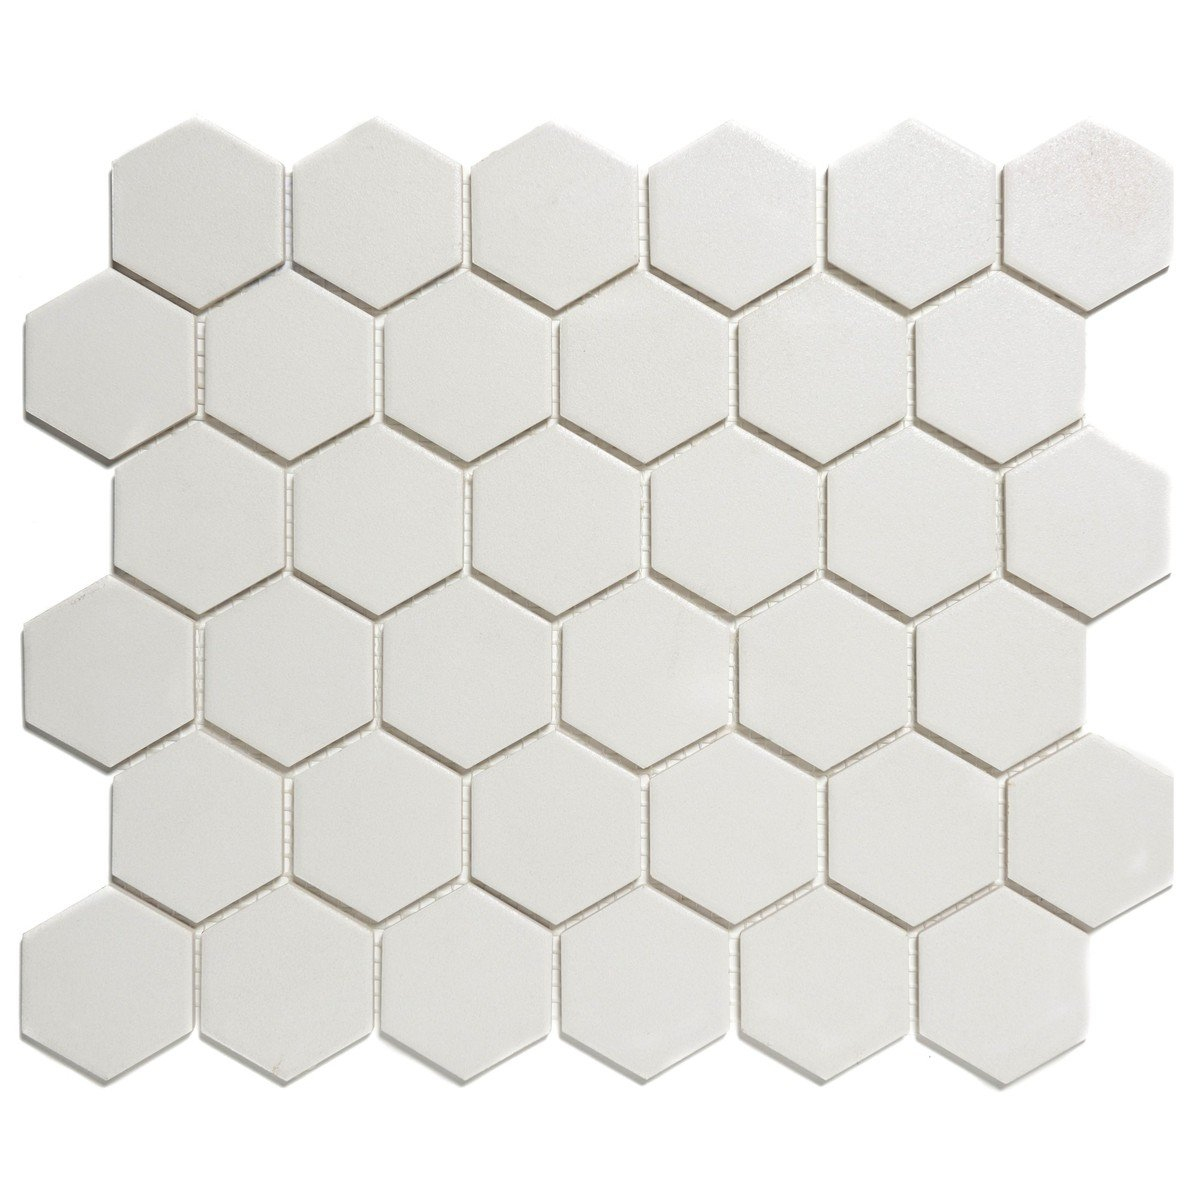 Carrelage Hexagonal Blanc | Venus Et Judes dedans Carrelage Hexagonal Sol Blanc